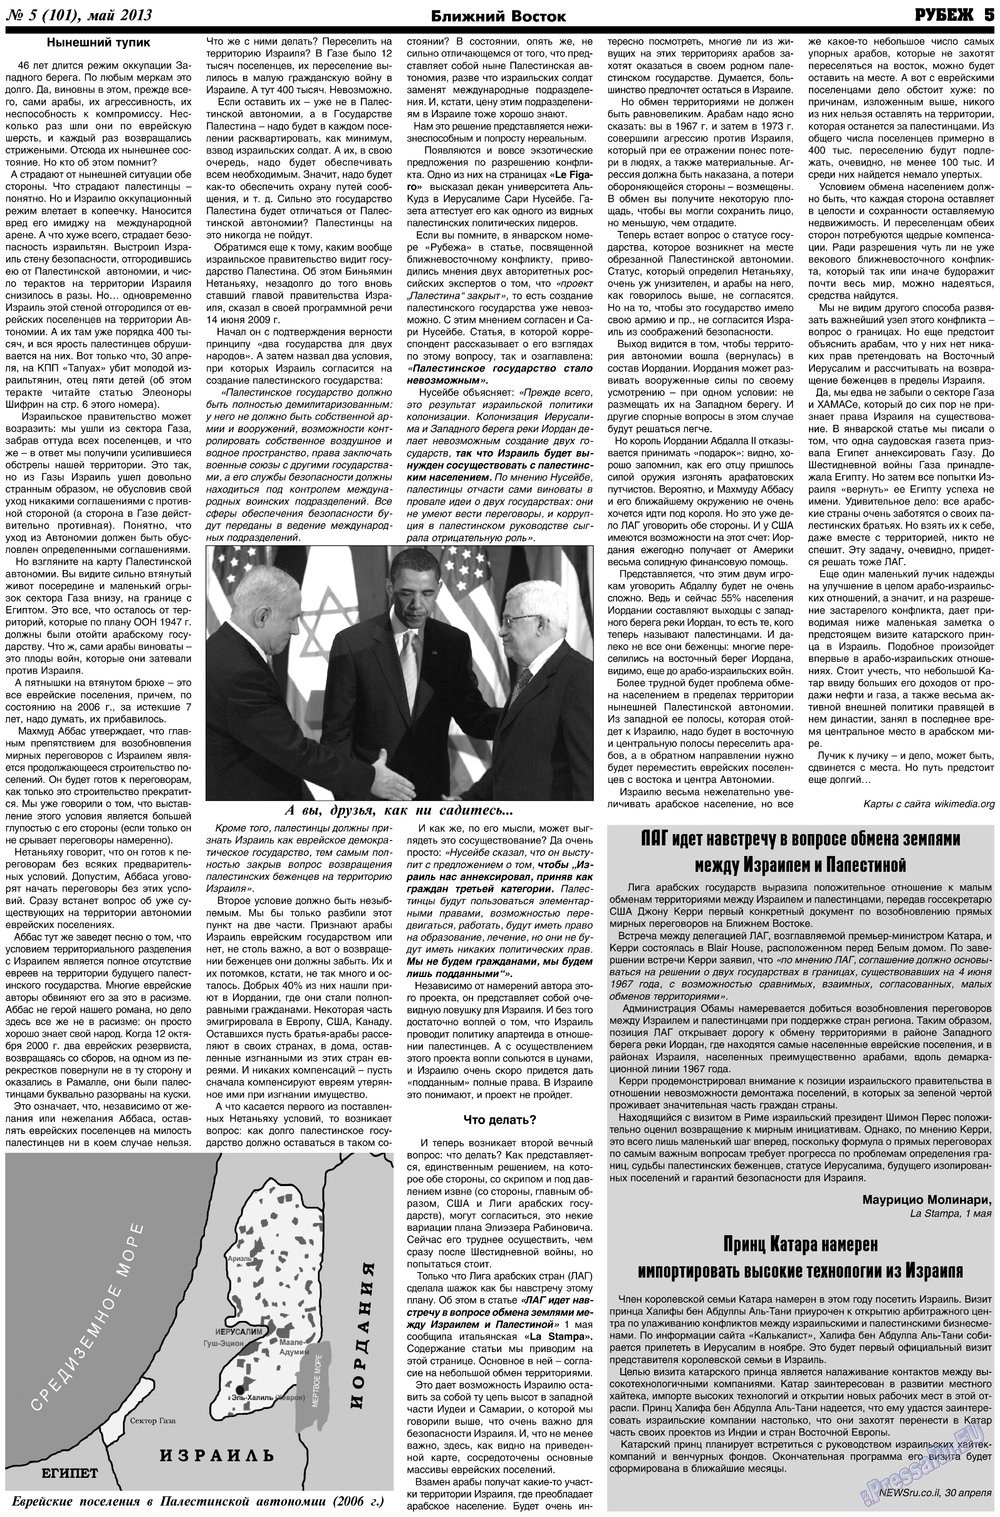 Рубеж (газета). 2013 год, номер 5, стр. 5